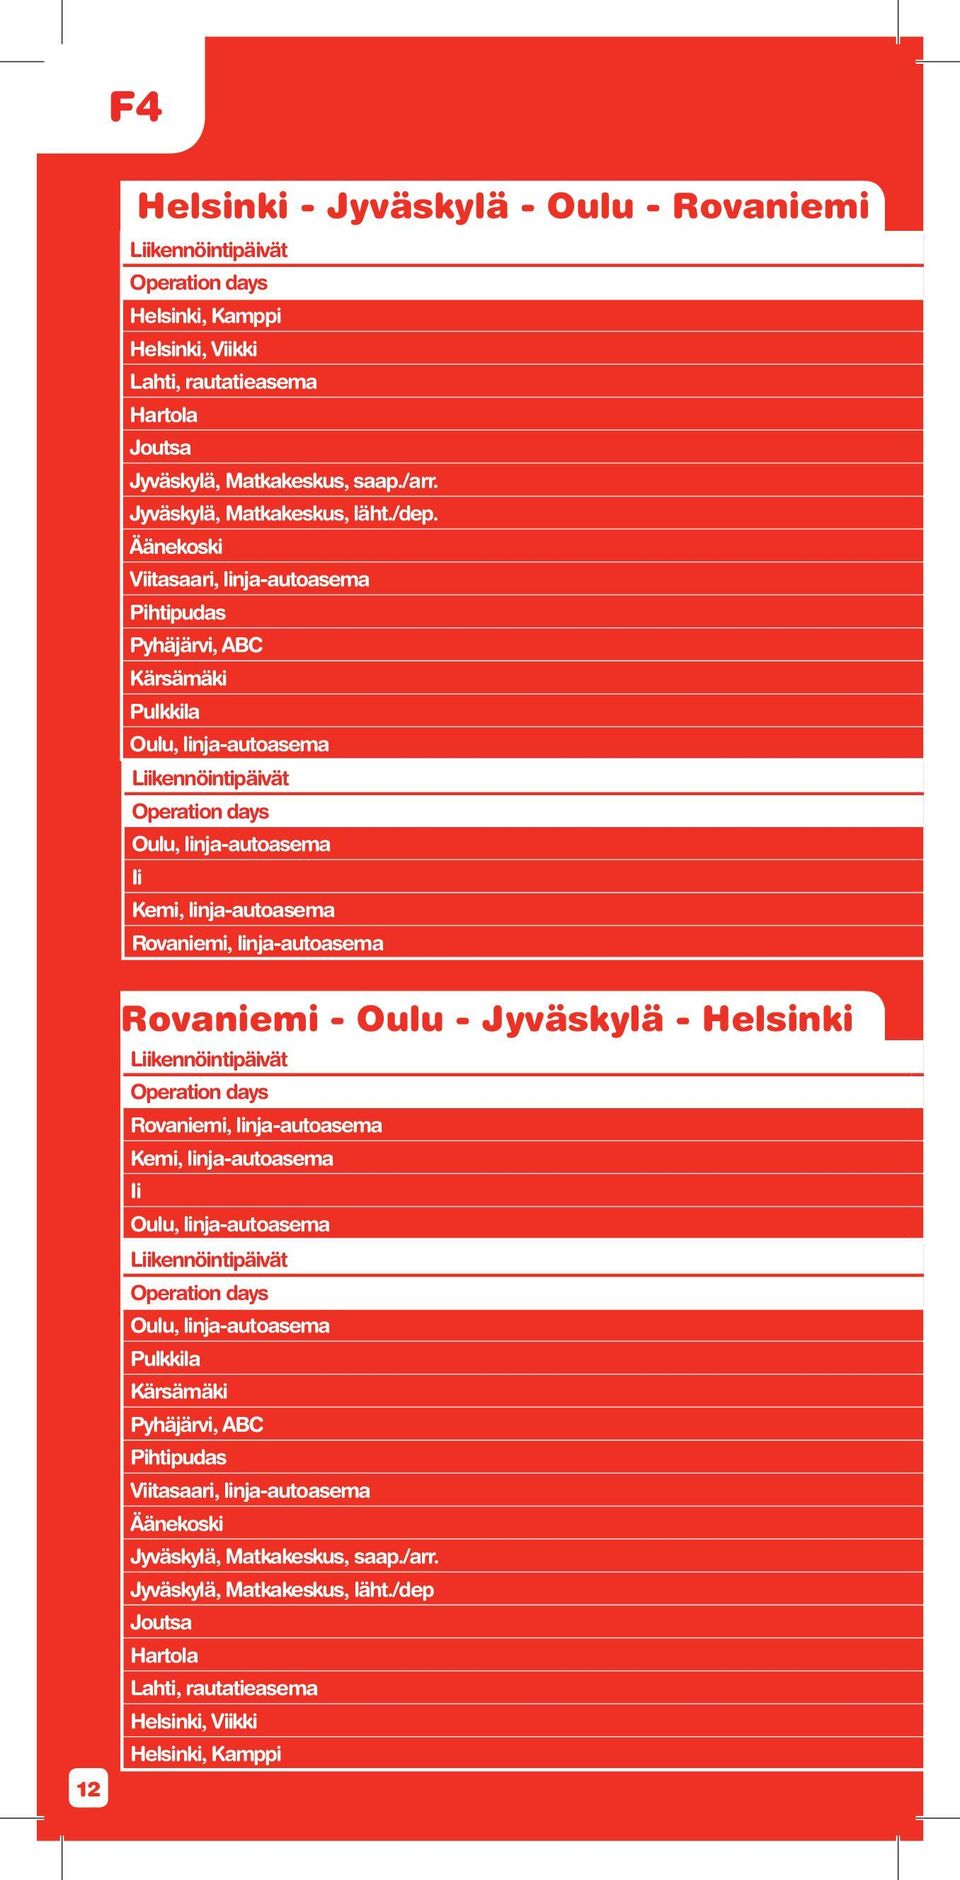 Äänekoski Viitasaari, linja-autoasema Pihtipudas Pyhäjärvi, ABC Kärsämäki Pulkkila Oulu, linja-autoasema Liikennöintipäivät Operation days Oulu, linja-autoasema Ii Kemi, linja-autoasema Rovaniemi,